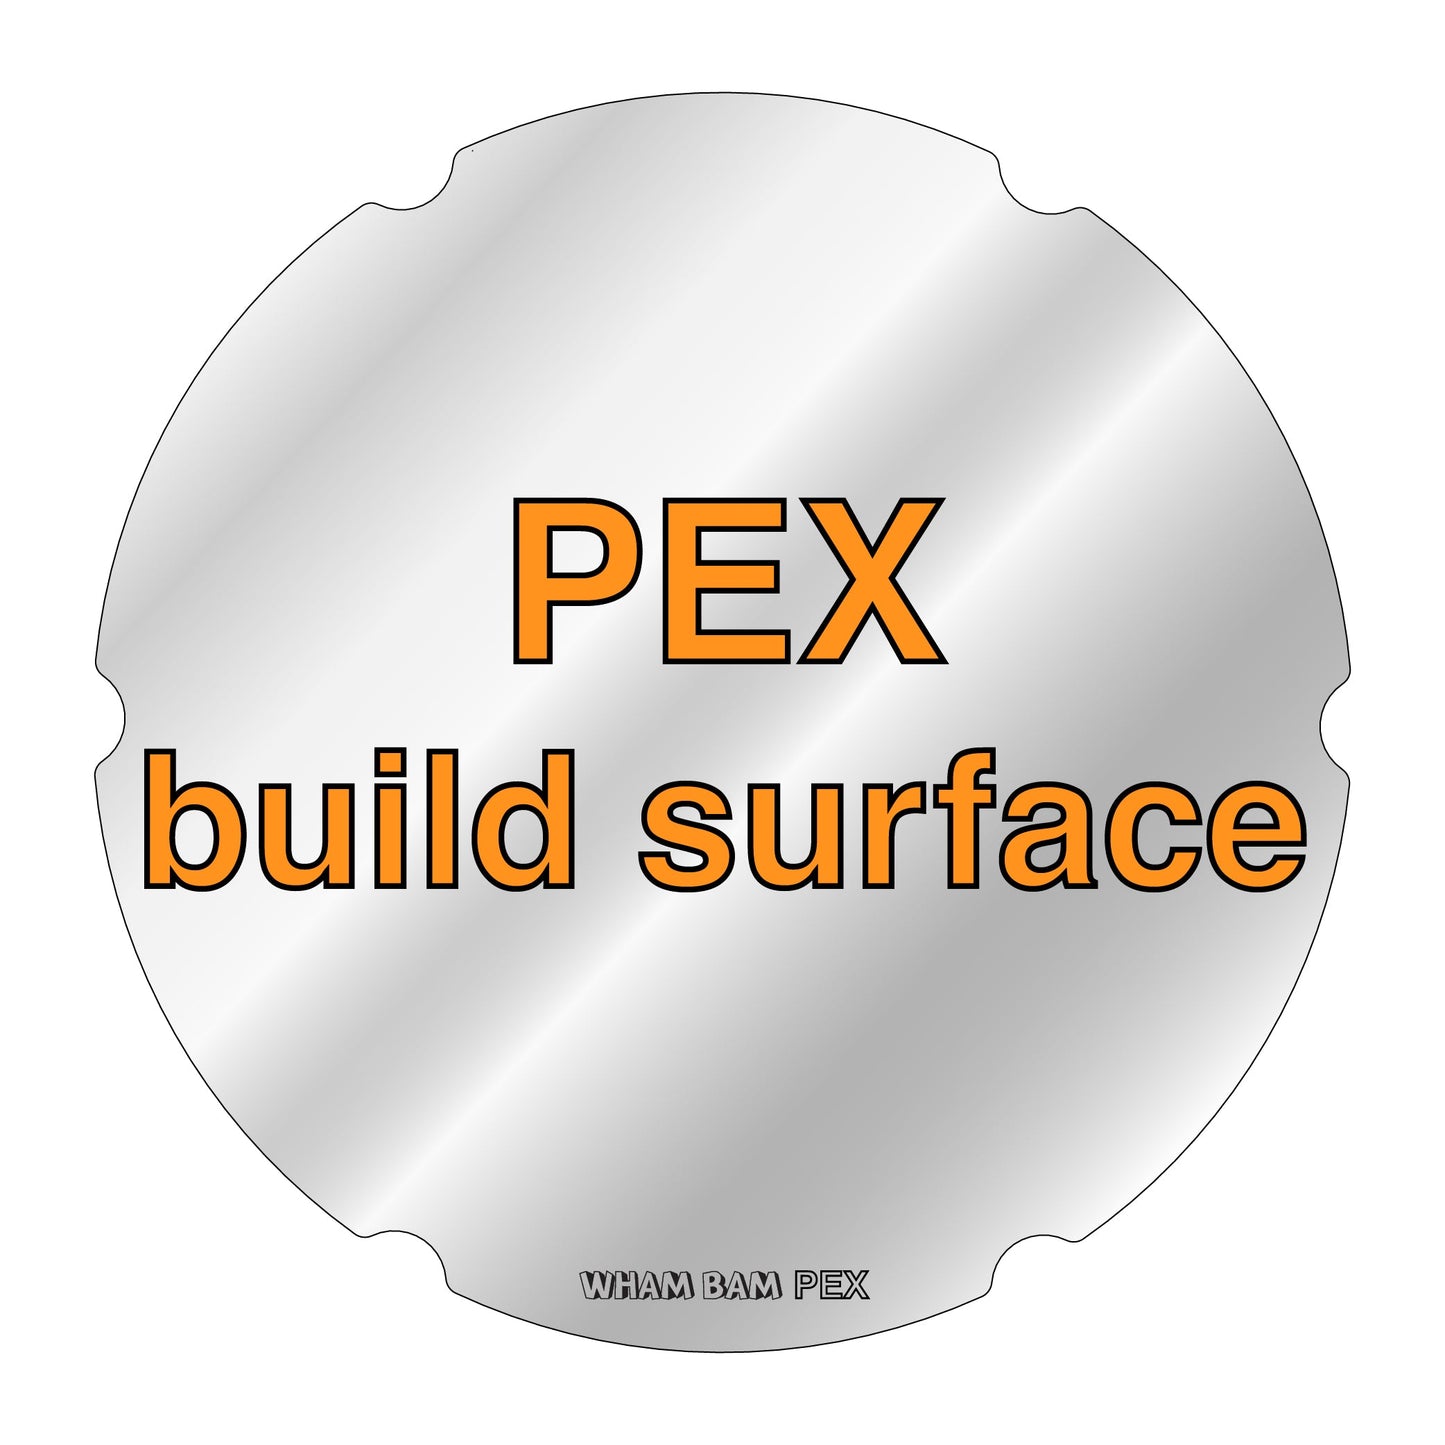 PEX Build Surface - Ø220 - FLSun Delta Mini & Q5 Delta, SEEMECNC Orion & H2